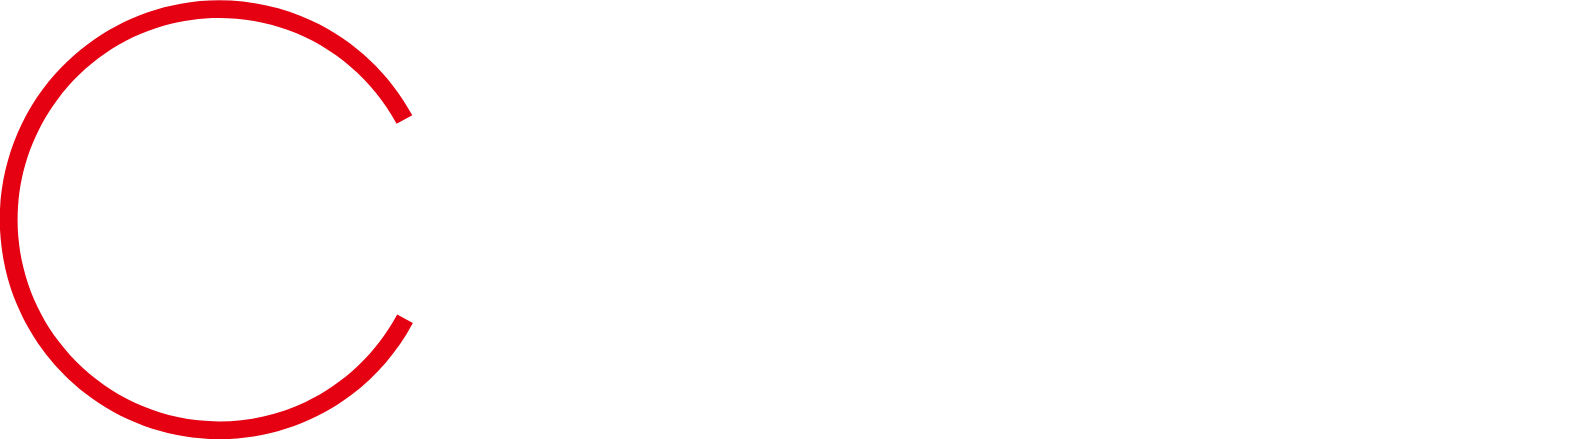 Full Truck Alliance Logo groß für dunkle Hintergründe (transparentes PNG)